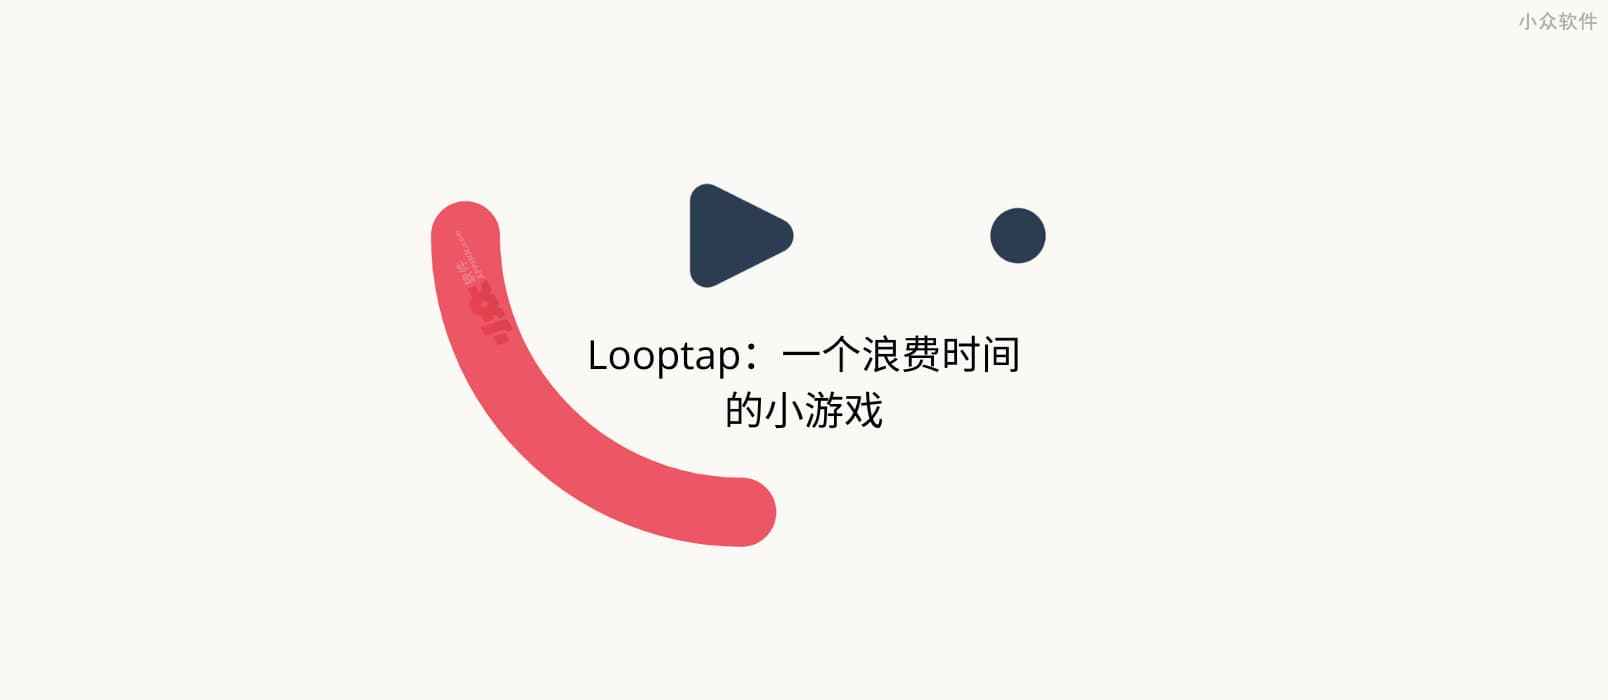 Looptap – 一个浪费你时间的最小游戏，是男人就点 1000 下